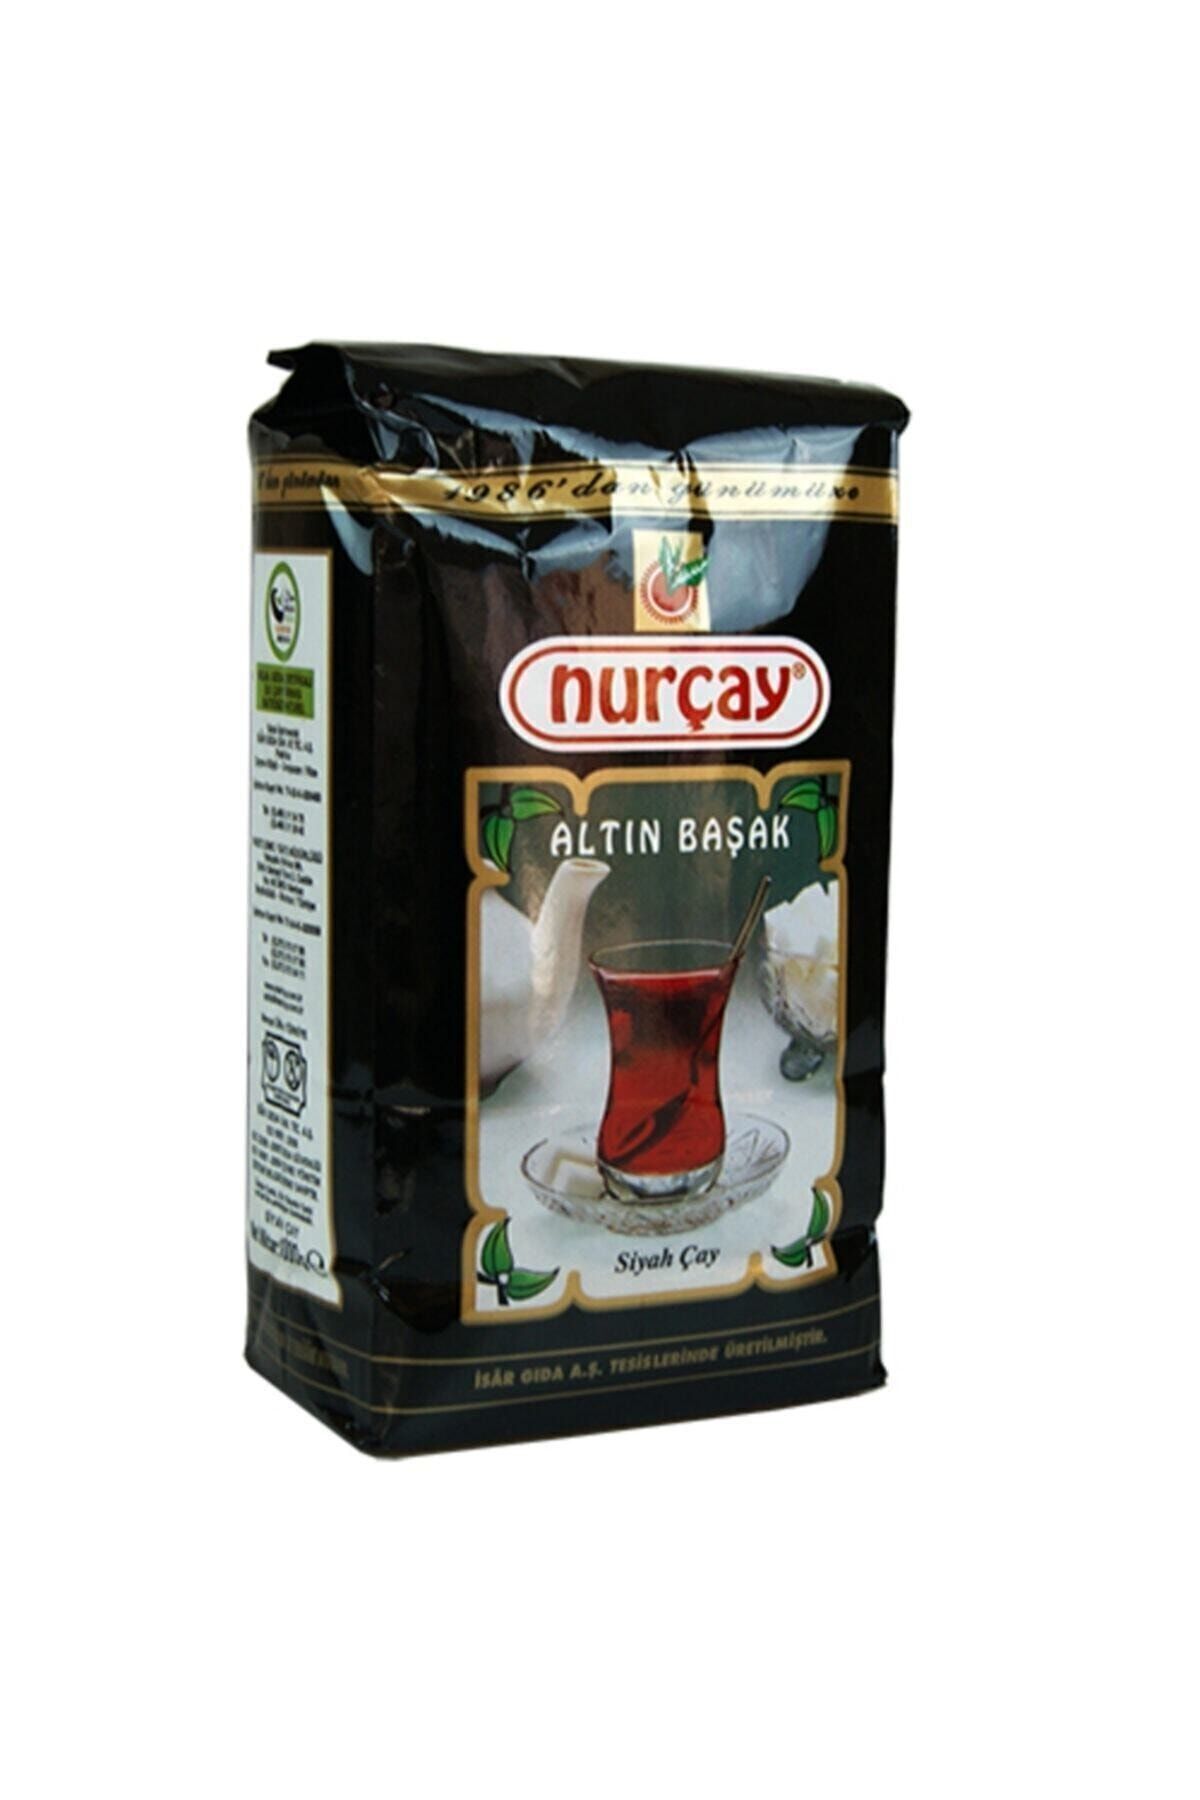 Nurçay Altınbaşak Çay 1000 gr